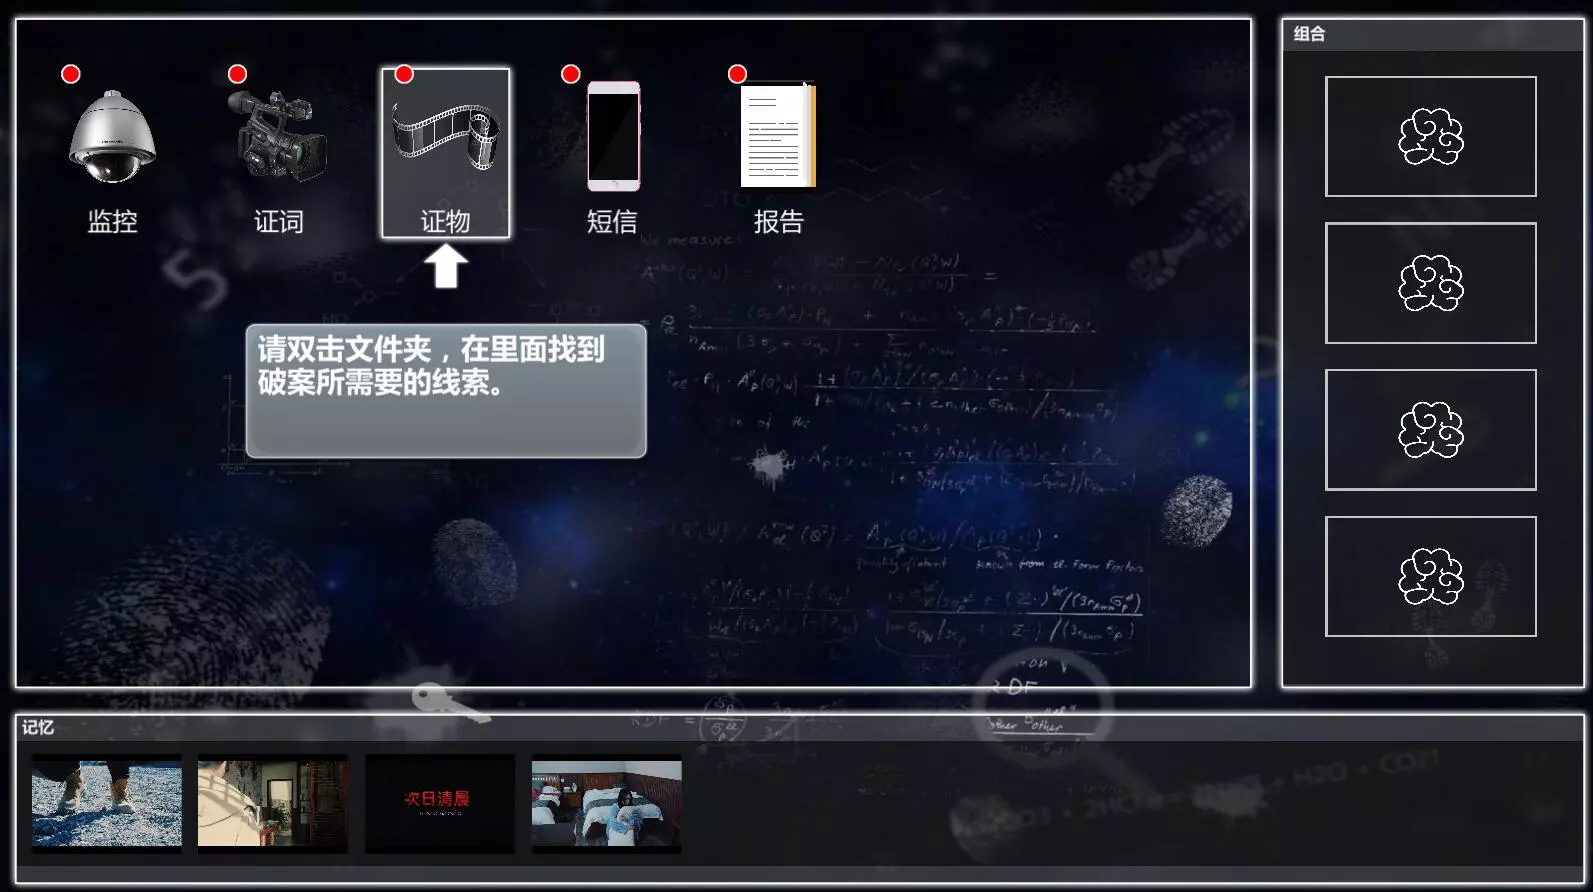 来访者2 全动态视频 华人制作侦探悬疑单机PC游戏 全程中文语音